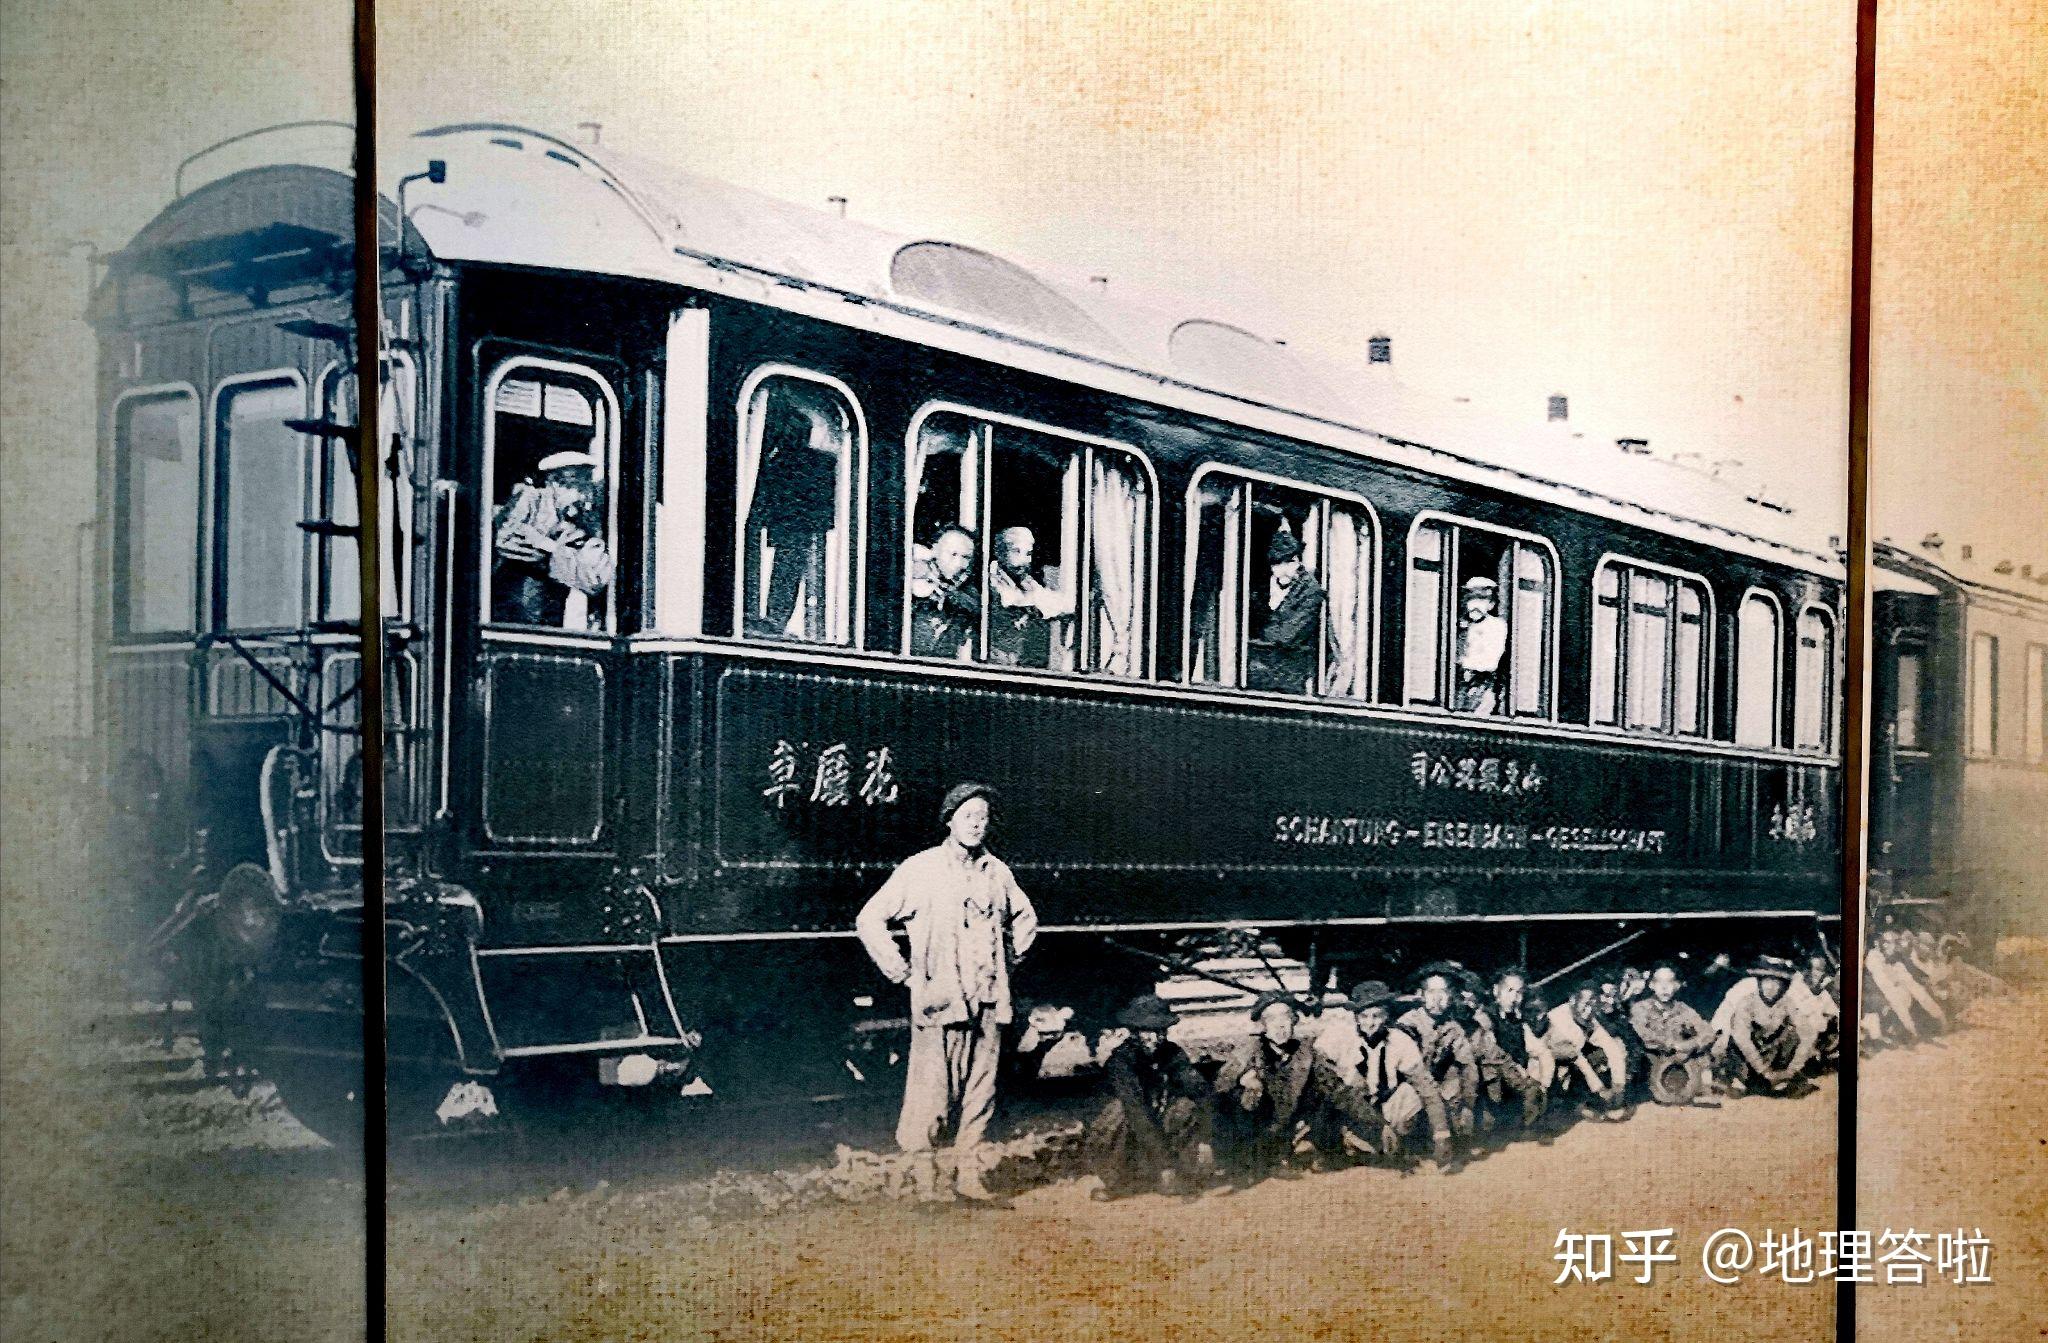 百年胶济铁路:从德国占领青岛,到胶济铁路建成通车